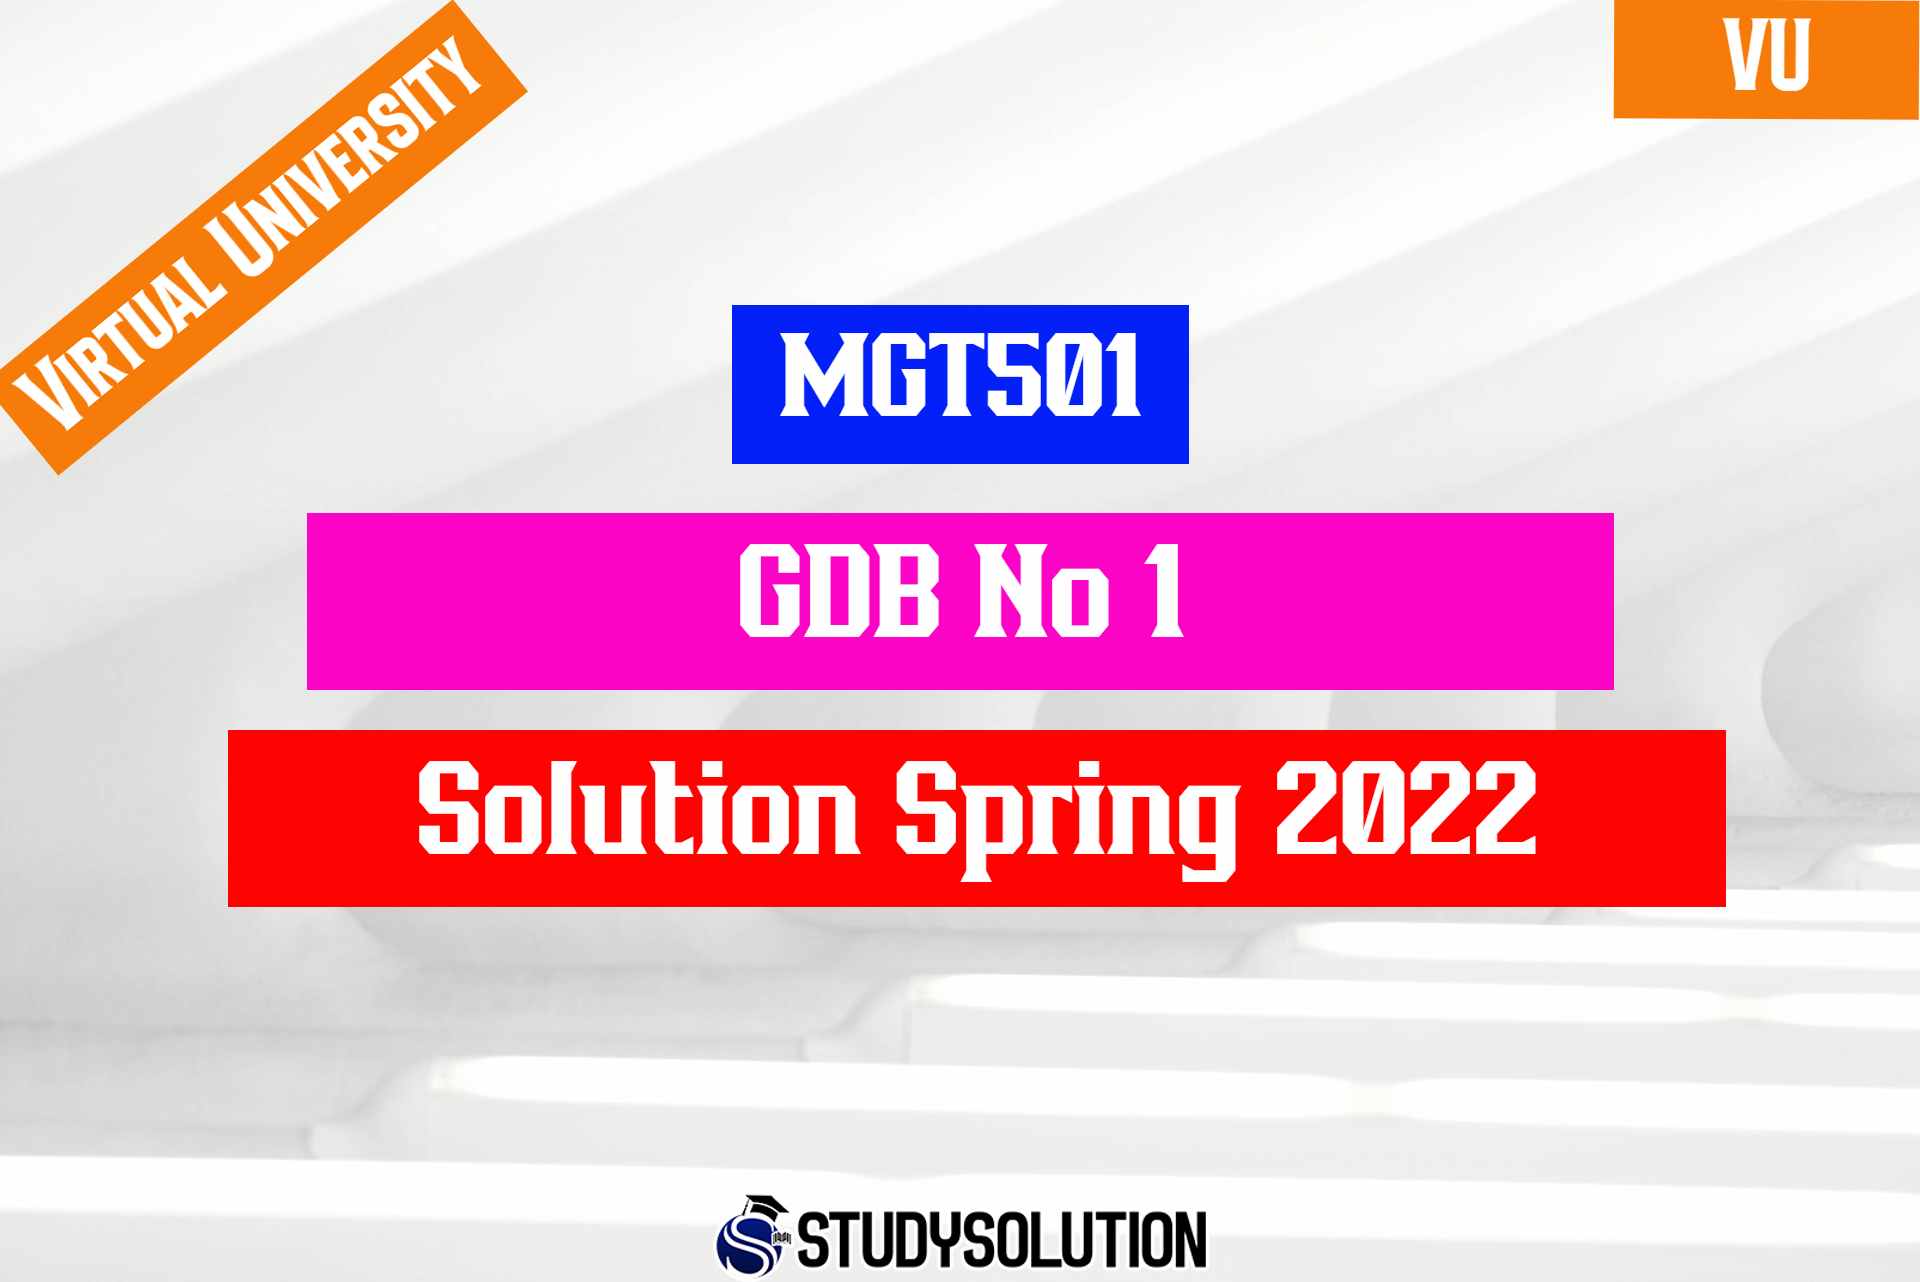 MGT501 GDB No 1 Solution Spring 2022